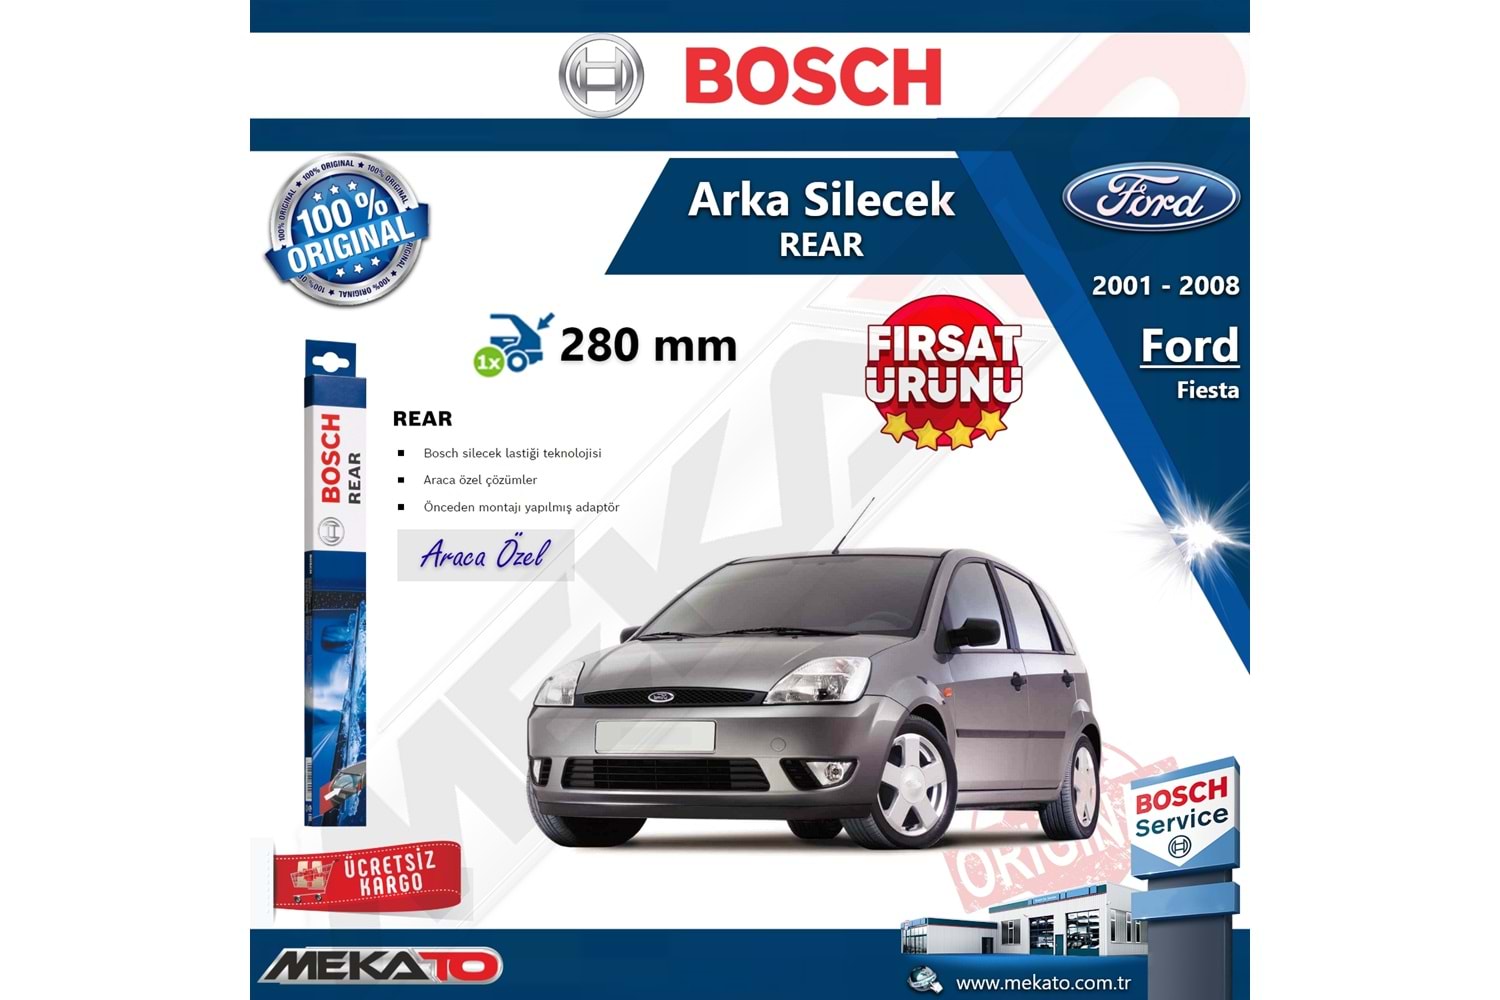 Ford Fiesta Arka Silecek Bosch Rear 2001-2008